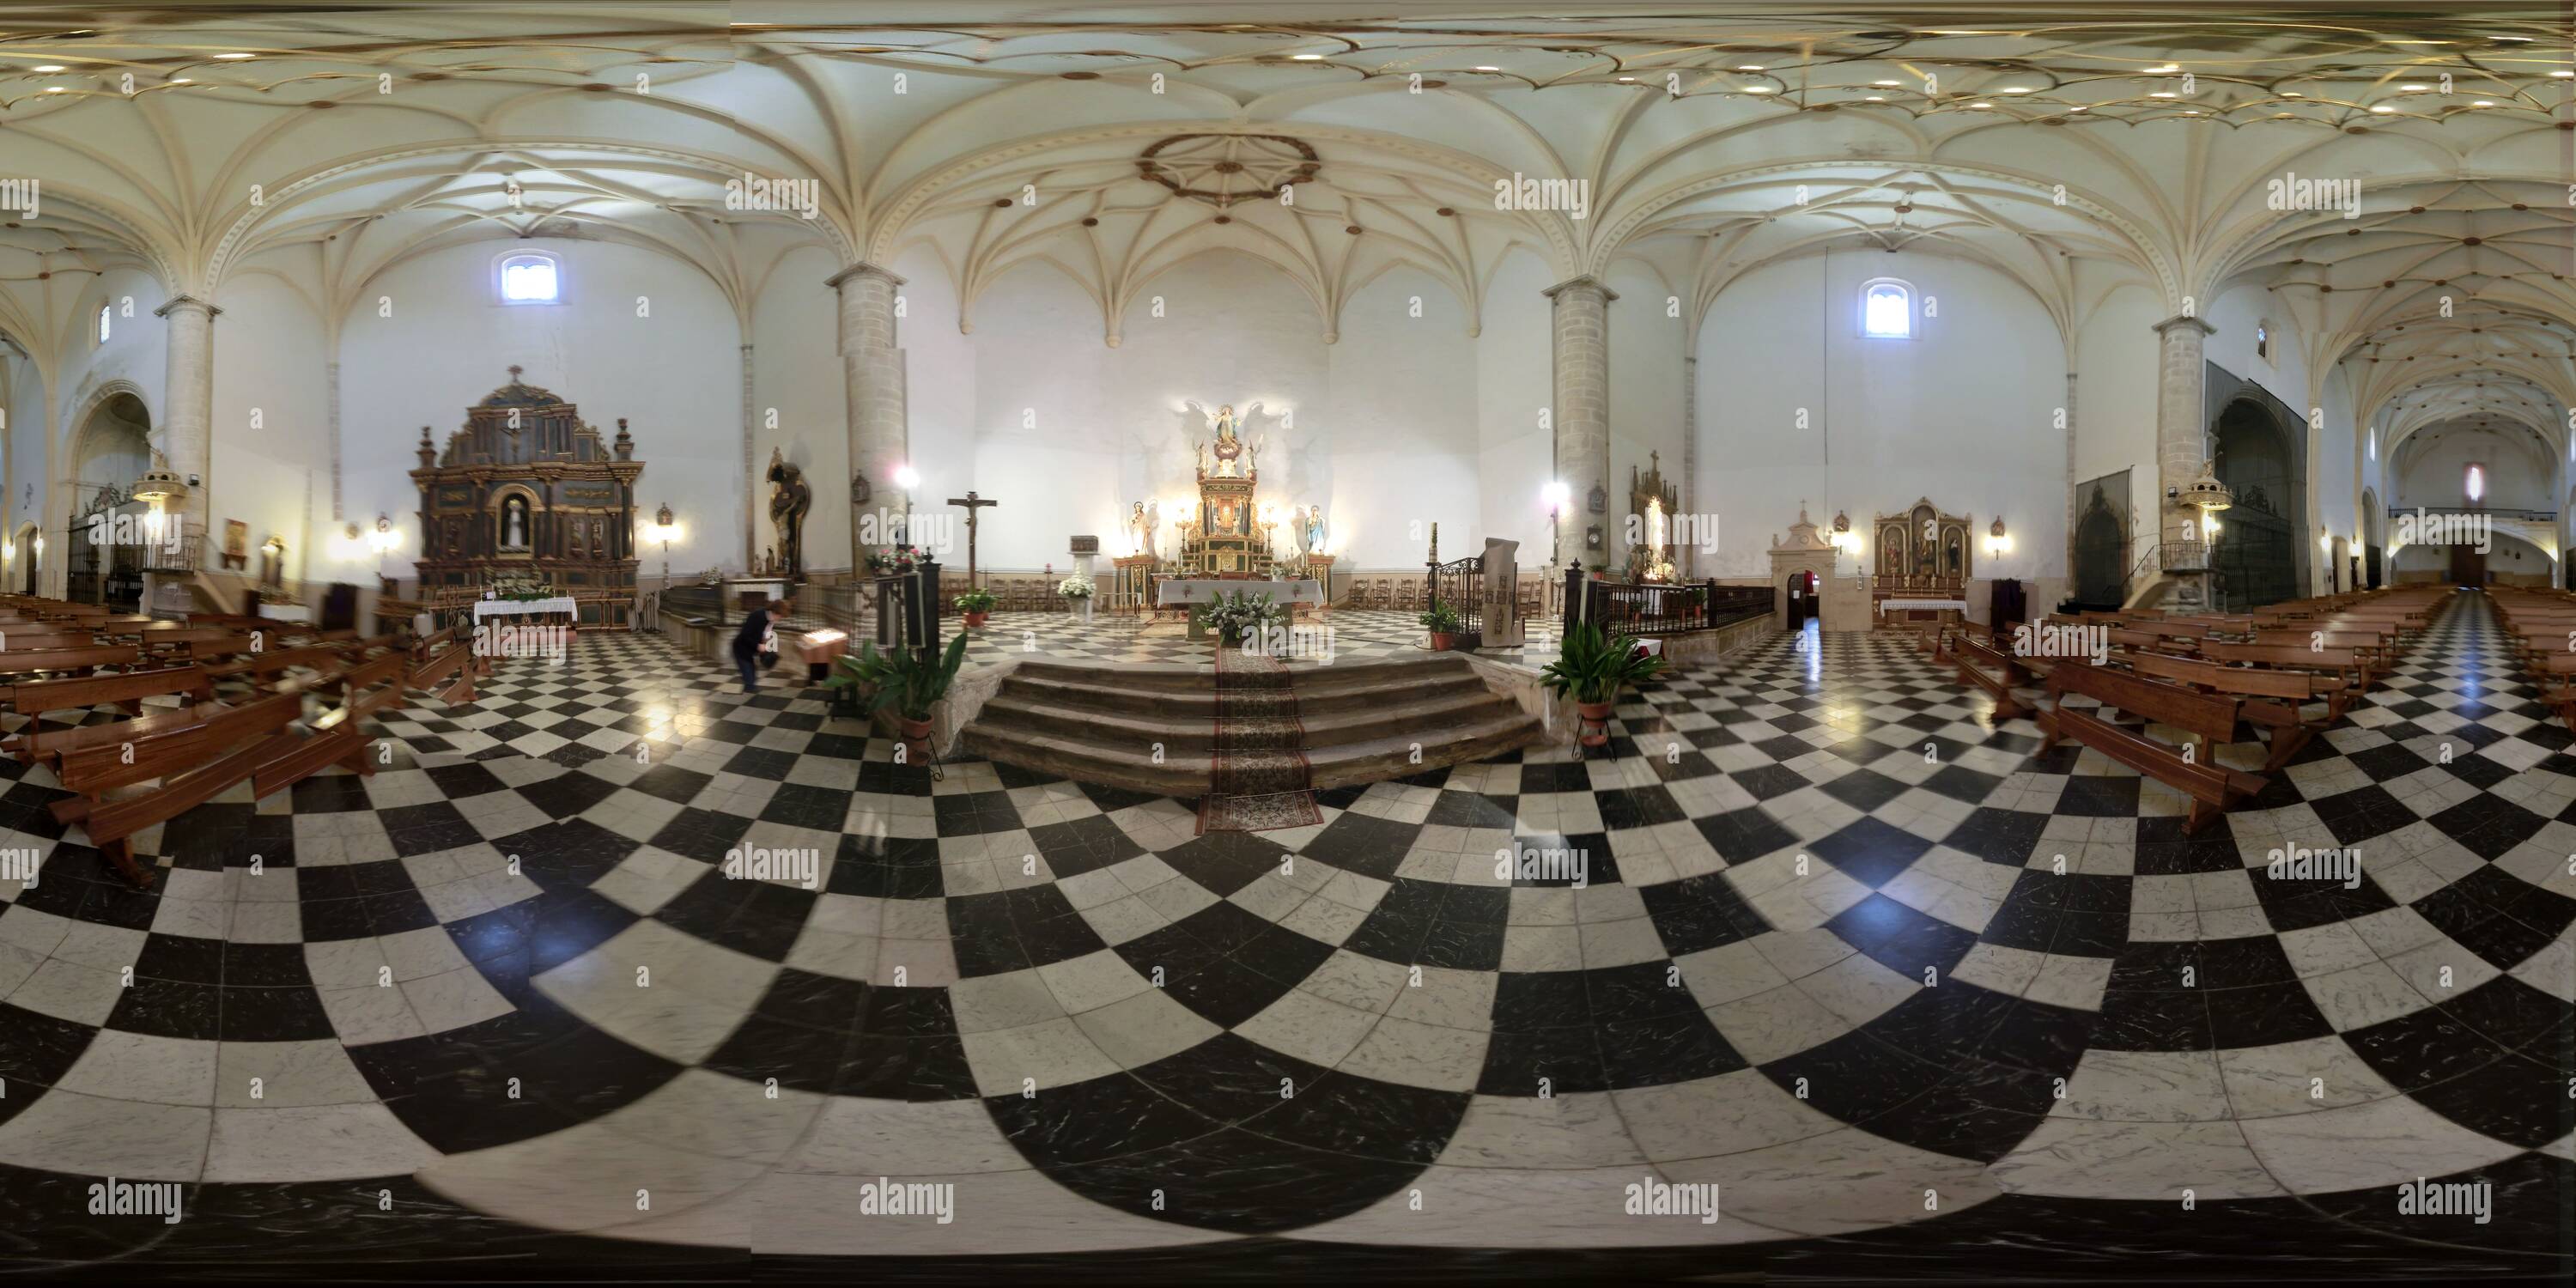 Vue panoramique à 360° de L'Iglesia Parroquial de Ntra. Sra. de la Asunción. Tembleque (Toledo)